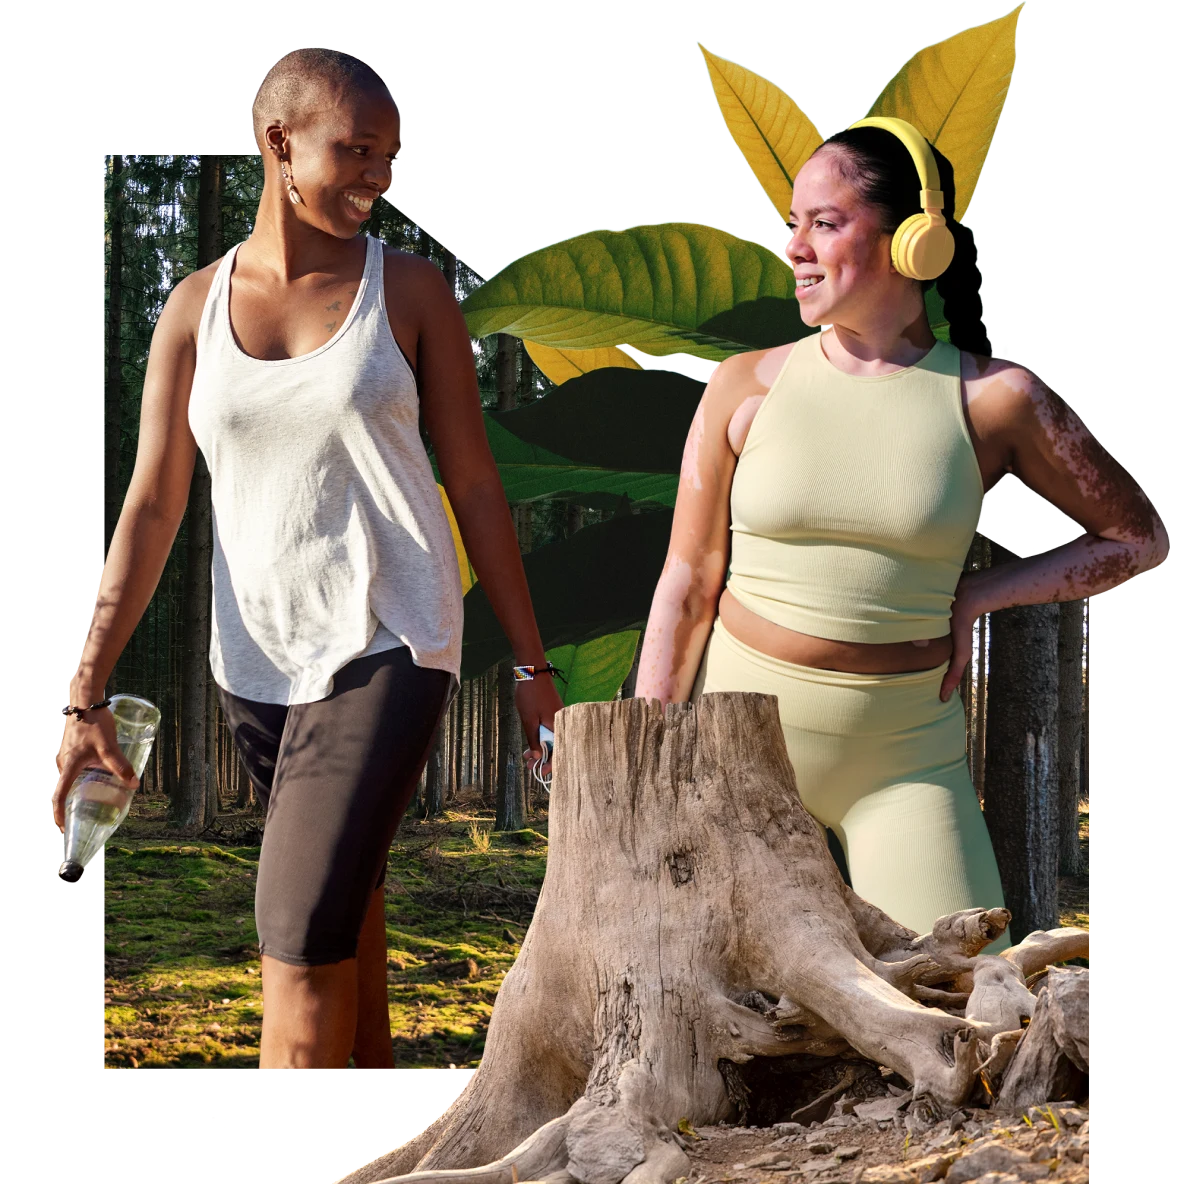 A la izquierda, una mujer de piel oscura camina con ropa deportiva sosteniendo una botella de agua. A la derecha, hay una mujer de piel clara con ropa deportiva y auriculares. Tronco de árbol en primer plano, plantas y bosques en el fondo.
